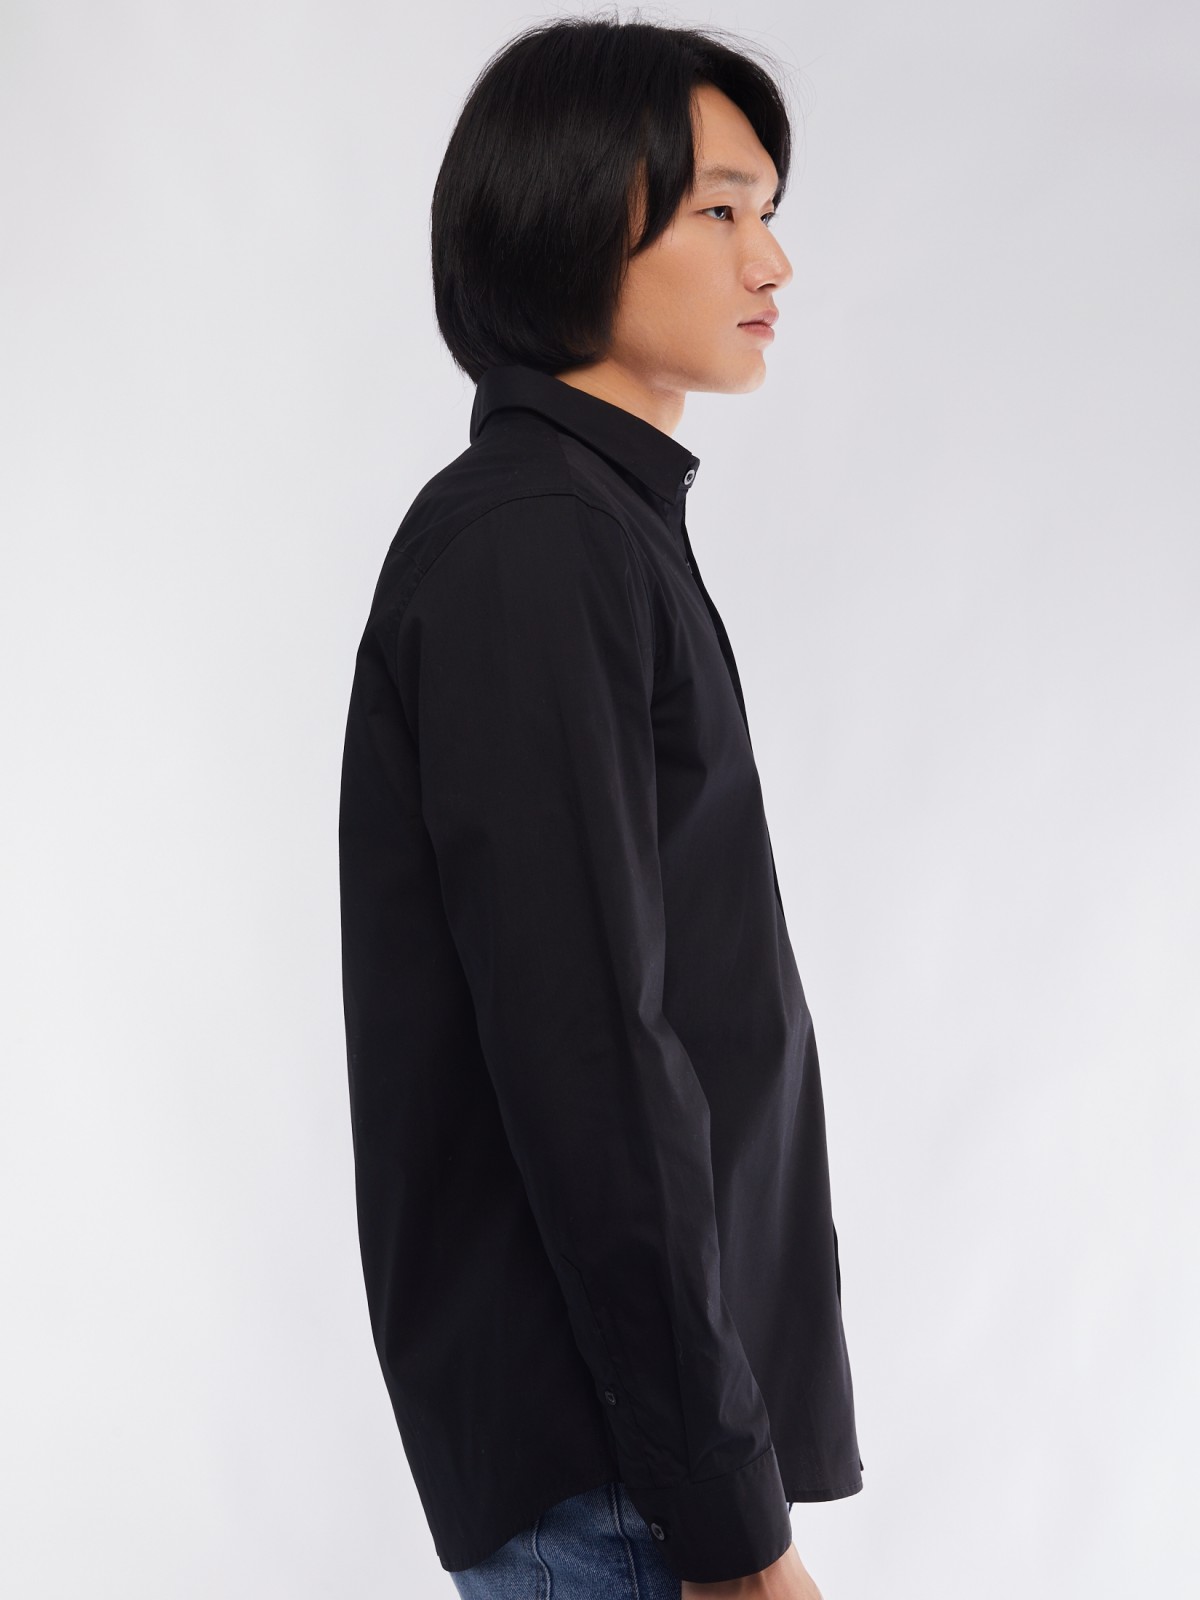 Офисная рубашка прямого силуэта с карманом zolla 014112162112, цвет черный, размер S - фото 5